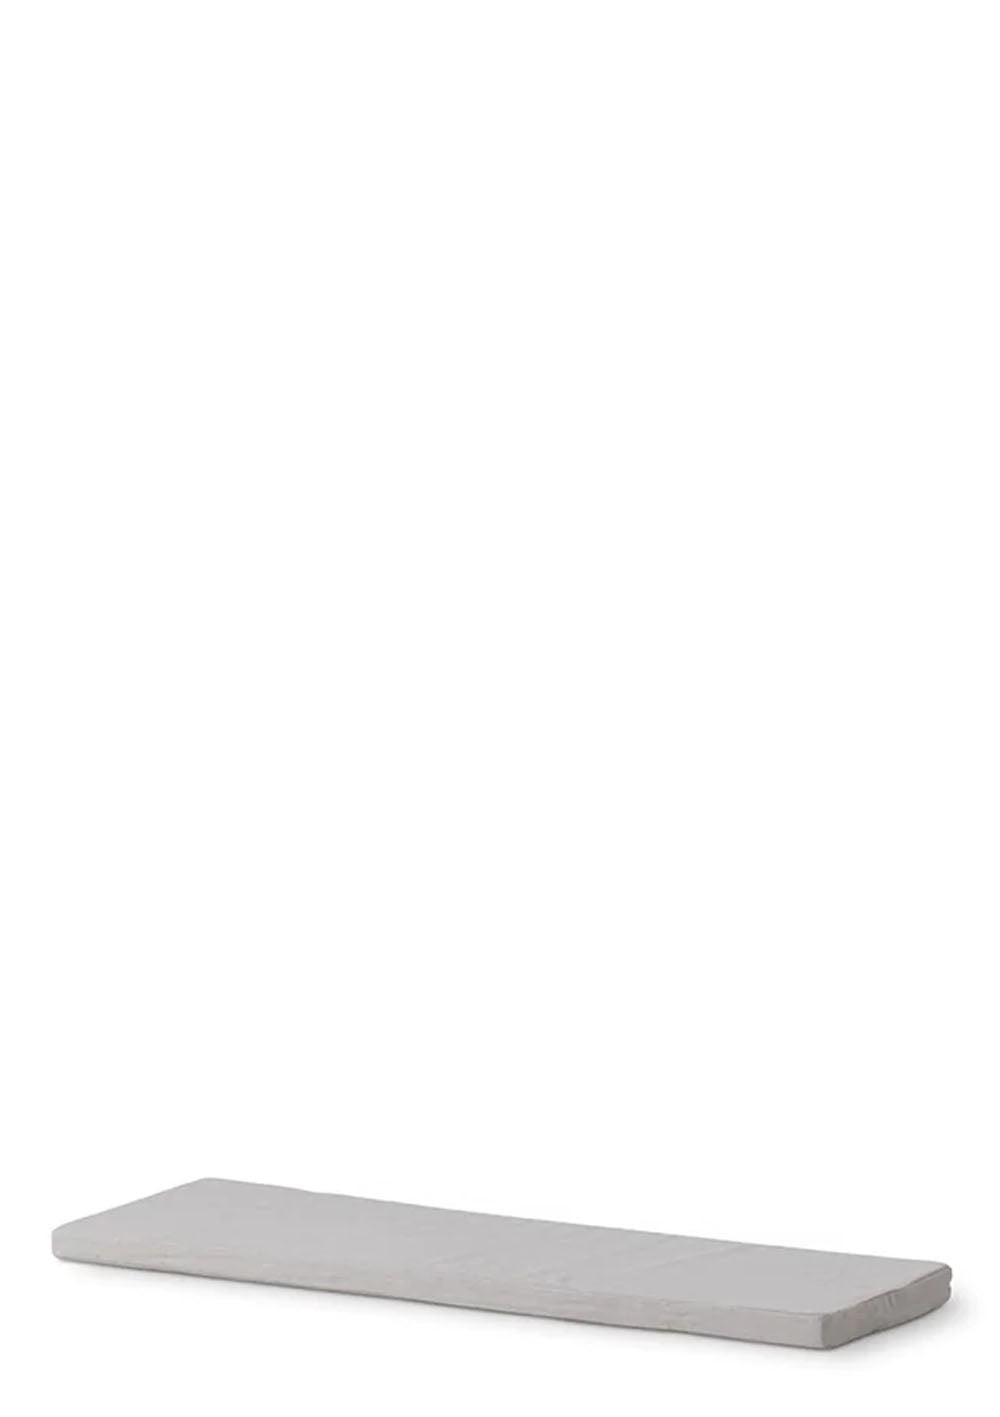 Oliver Furniture 'Wood' Sitzkissen für Regal 3x1